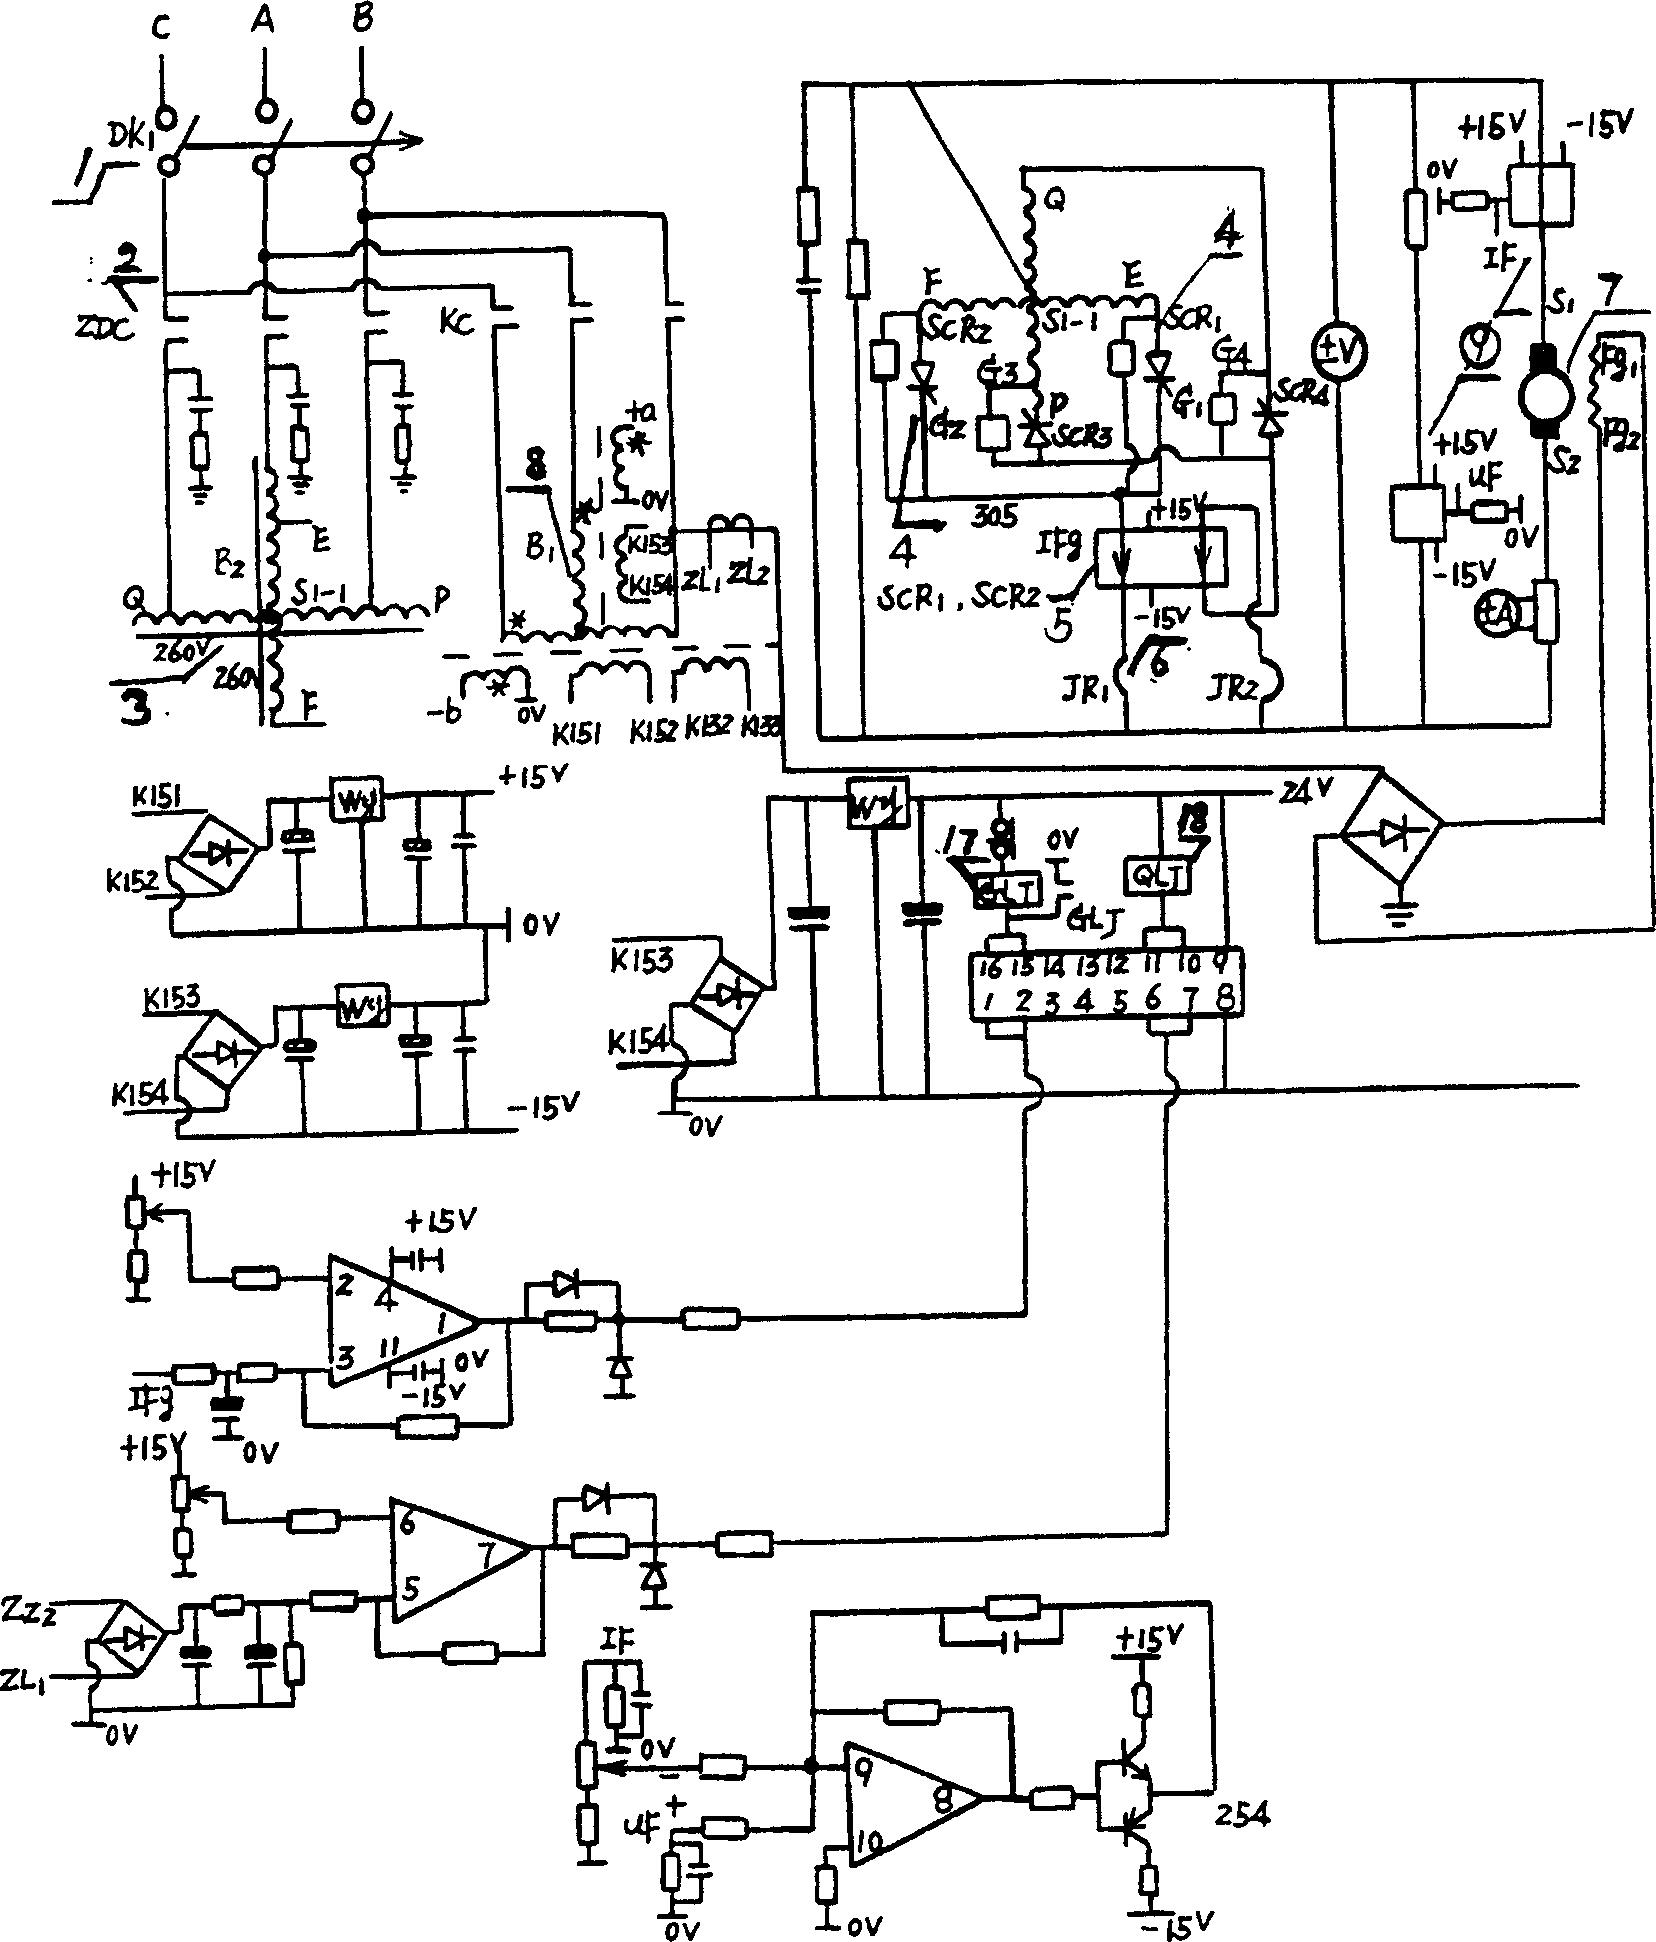 Electroslag furnace control system